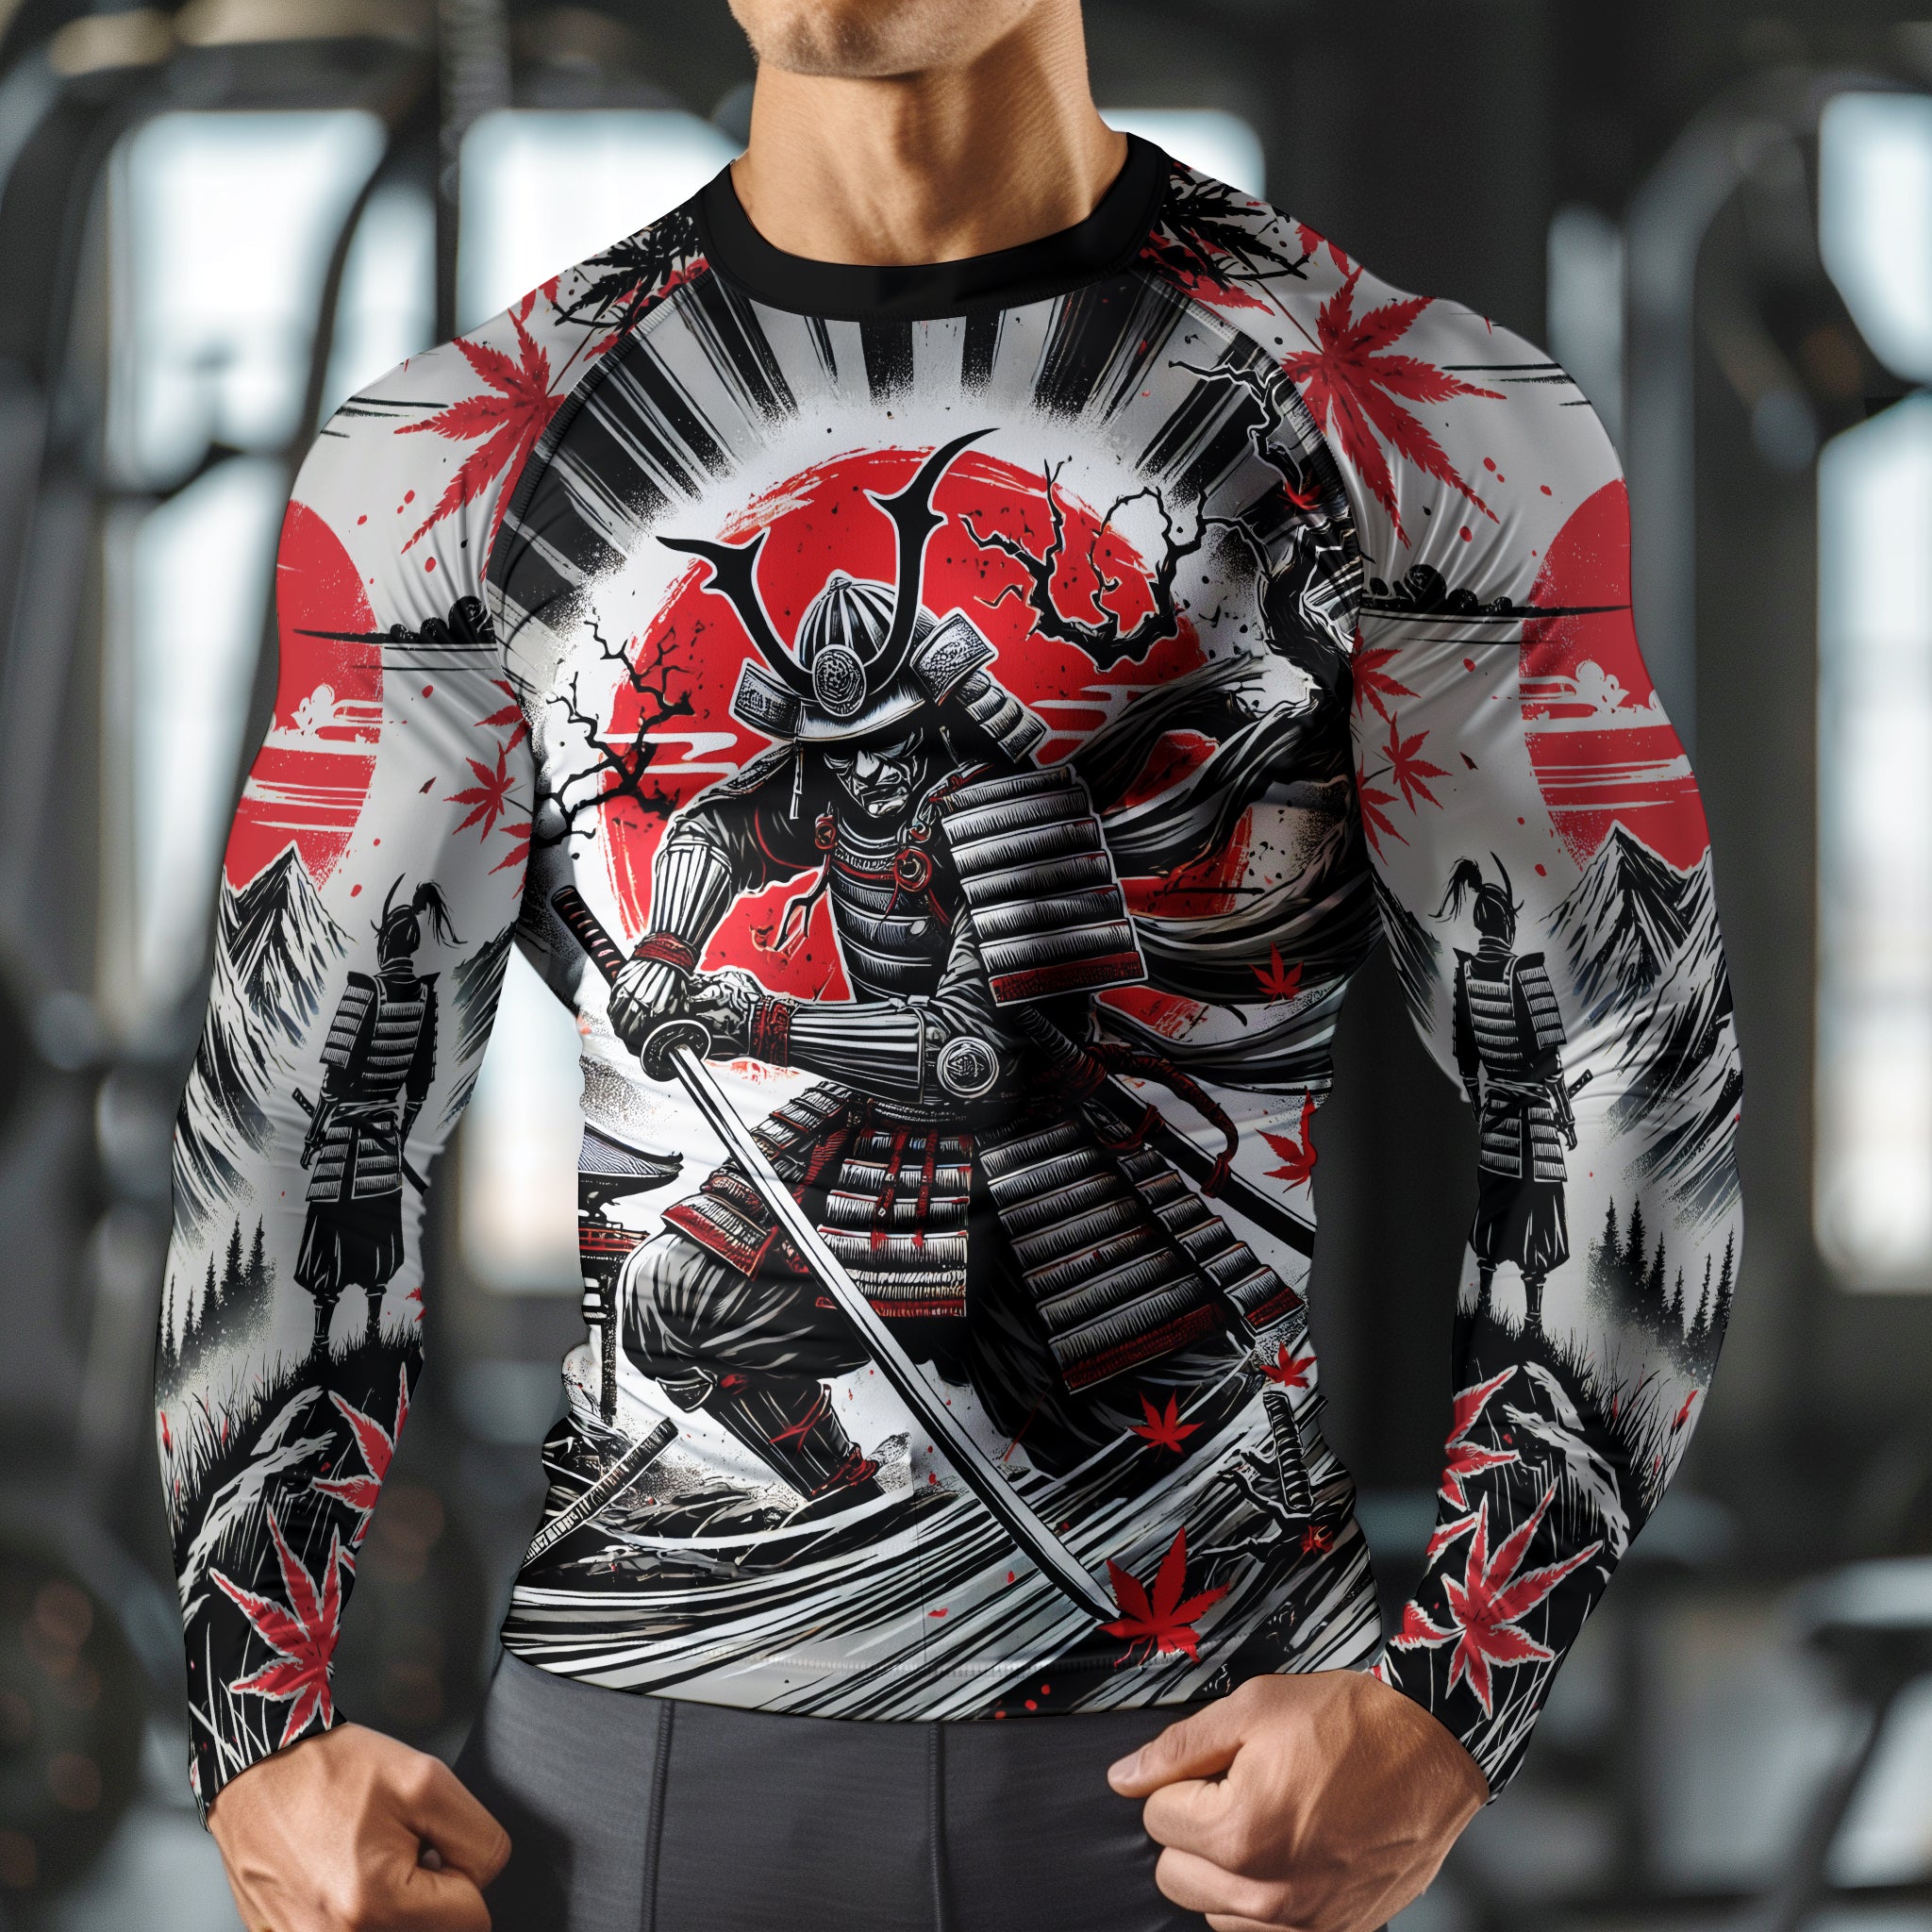 Samurai Warrior Compression Shirt Rash Guard Japanese Art 11383